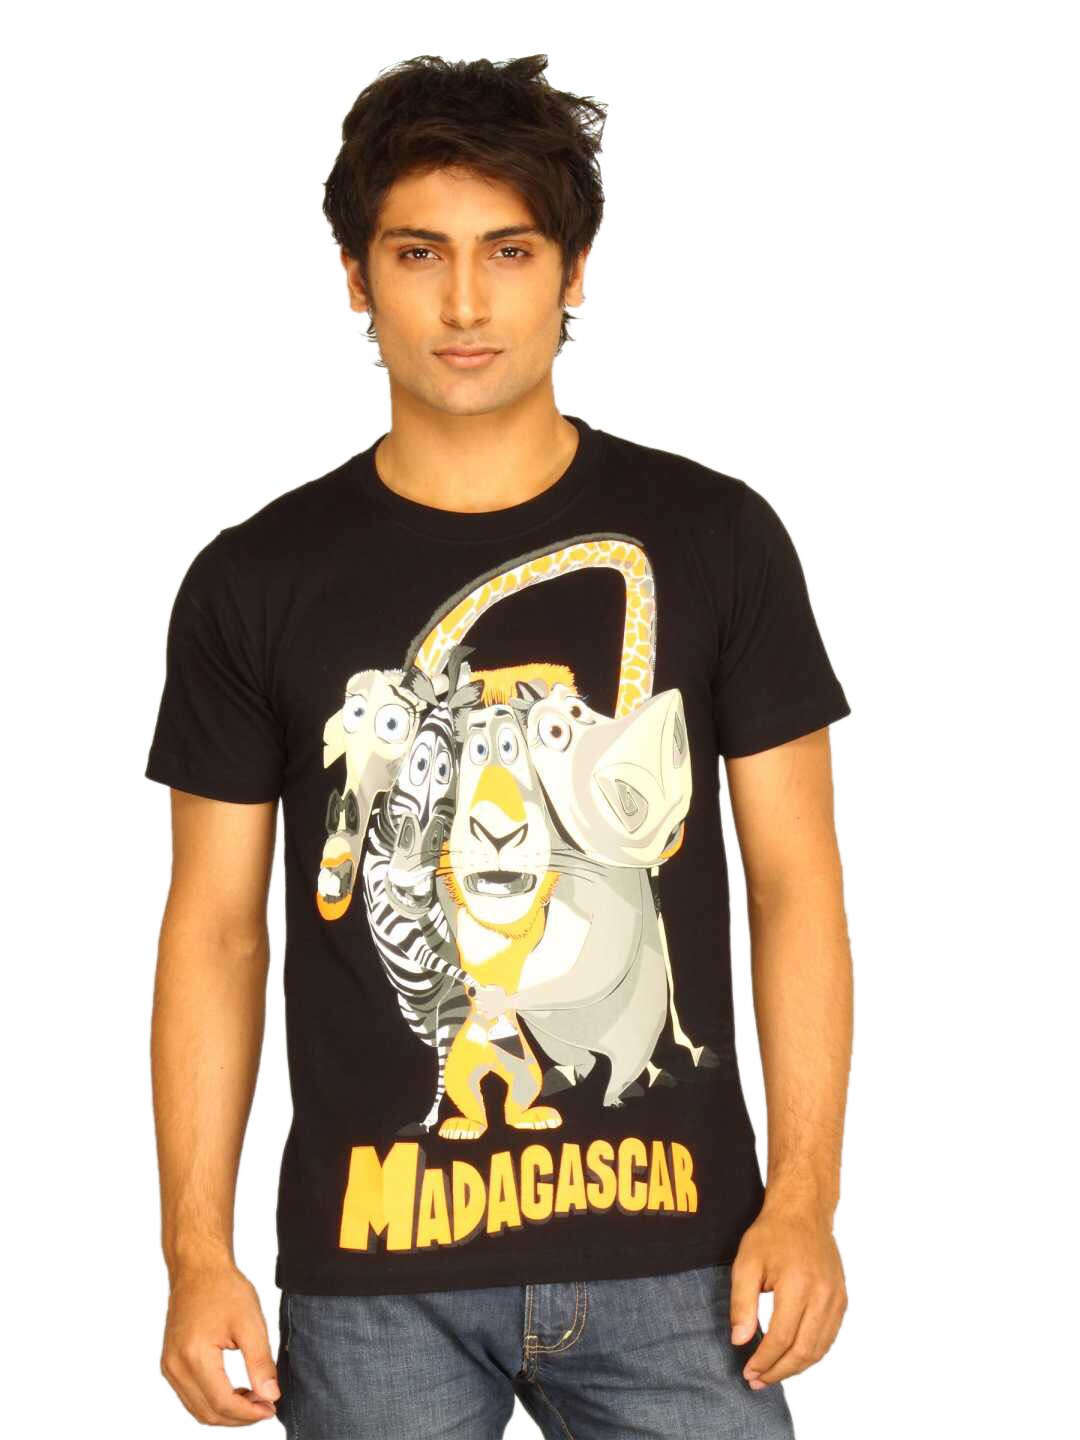 Guerrilla Men's Madagascar Black T-shirt